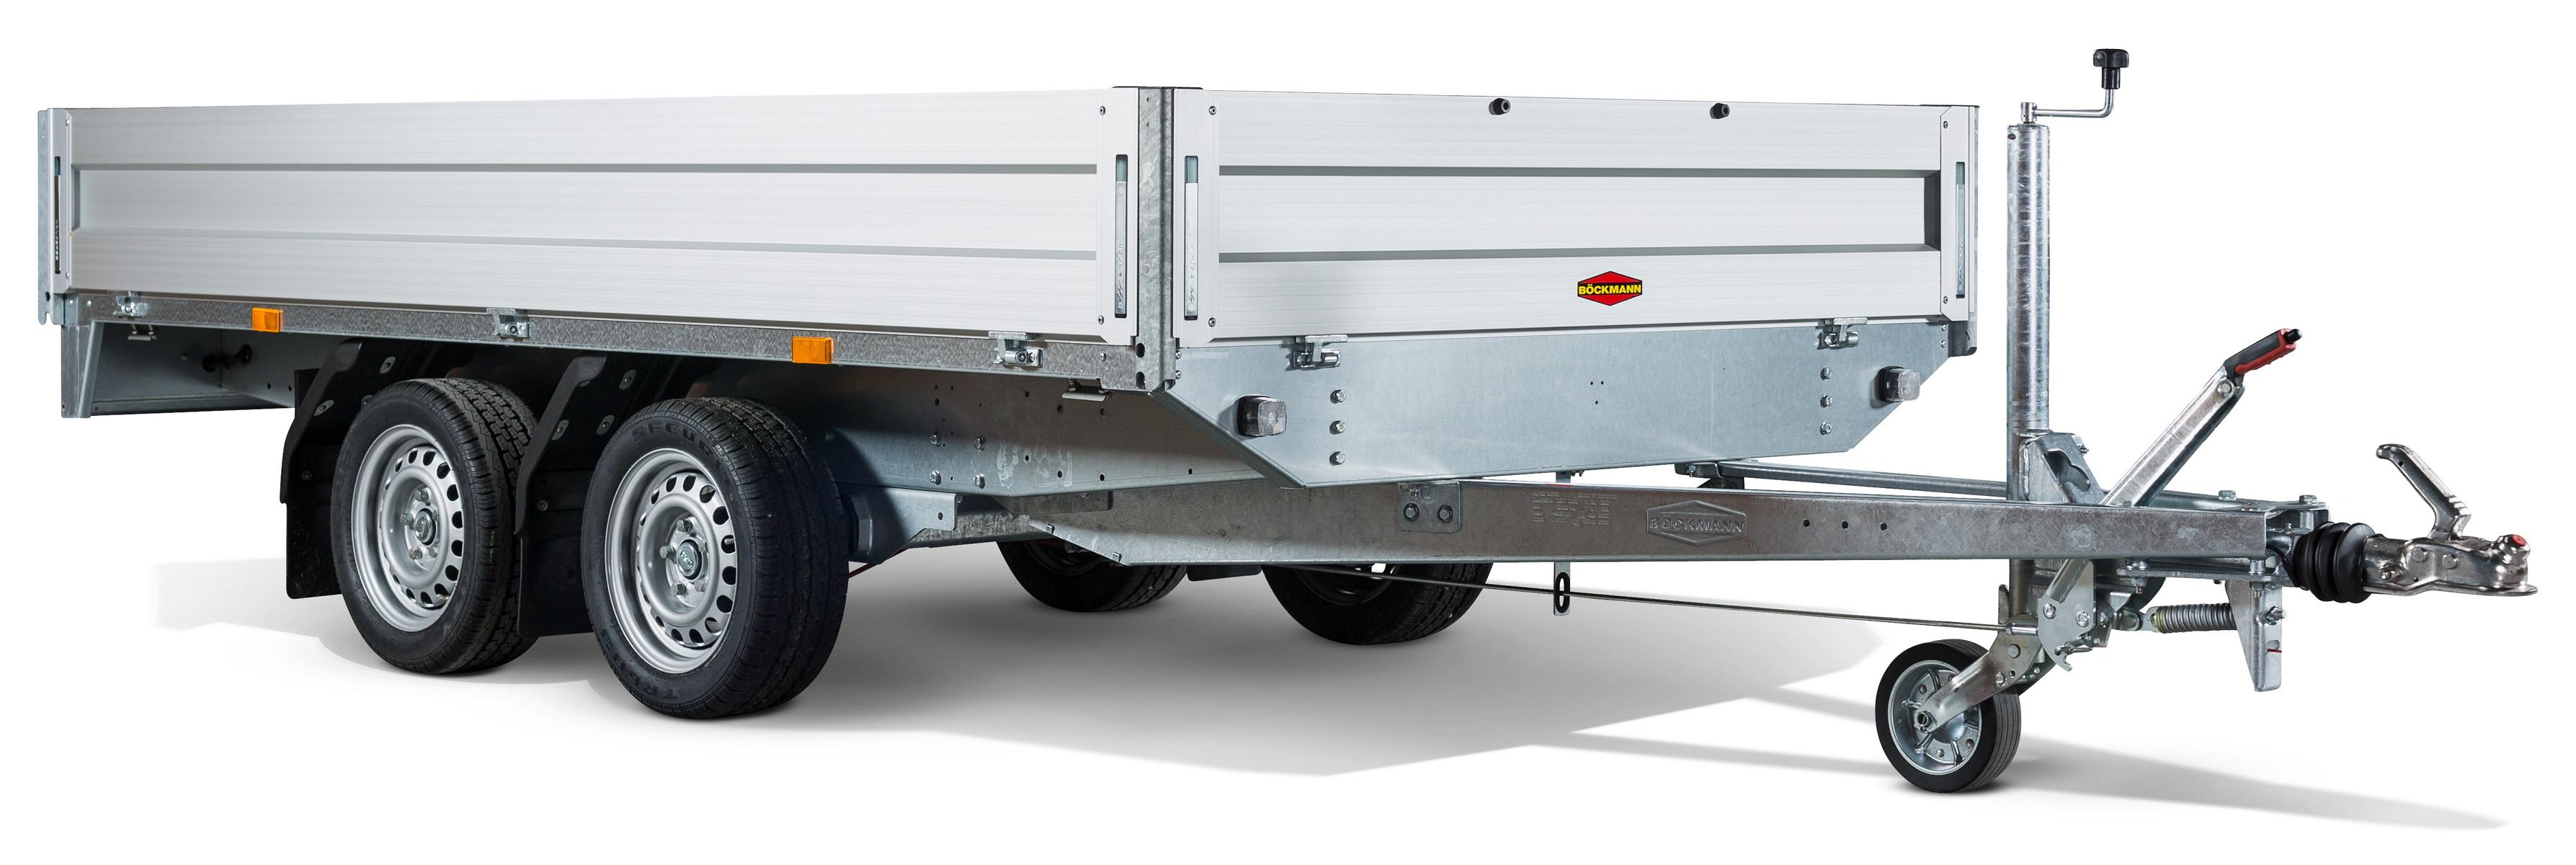 KFZ / Mehrzwecktransport-Anhänger mit Auffahrrampen, zul. GG 2.700 kg, Nutzlast max. 2.080 kg, Ladefläche 4,54 x 2,01 x 0,3 m